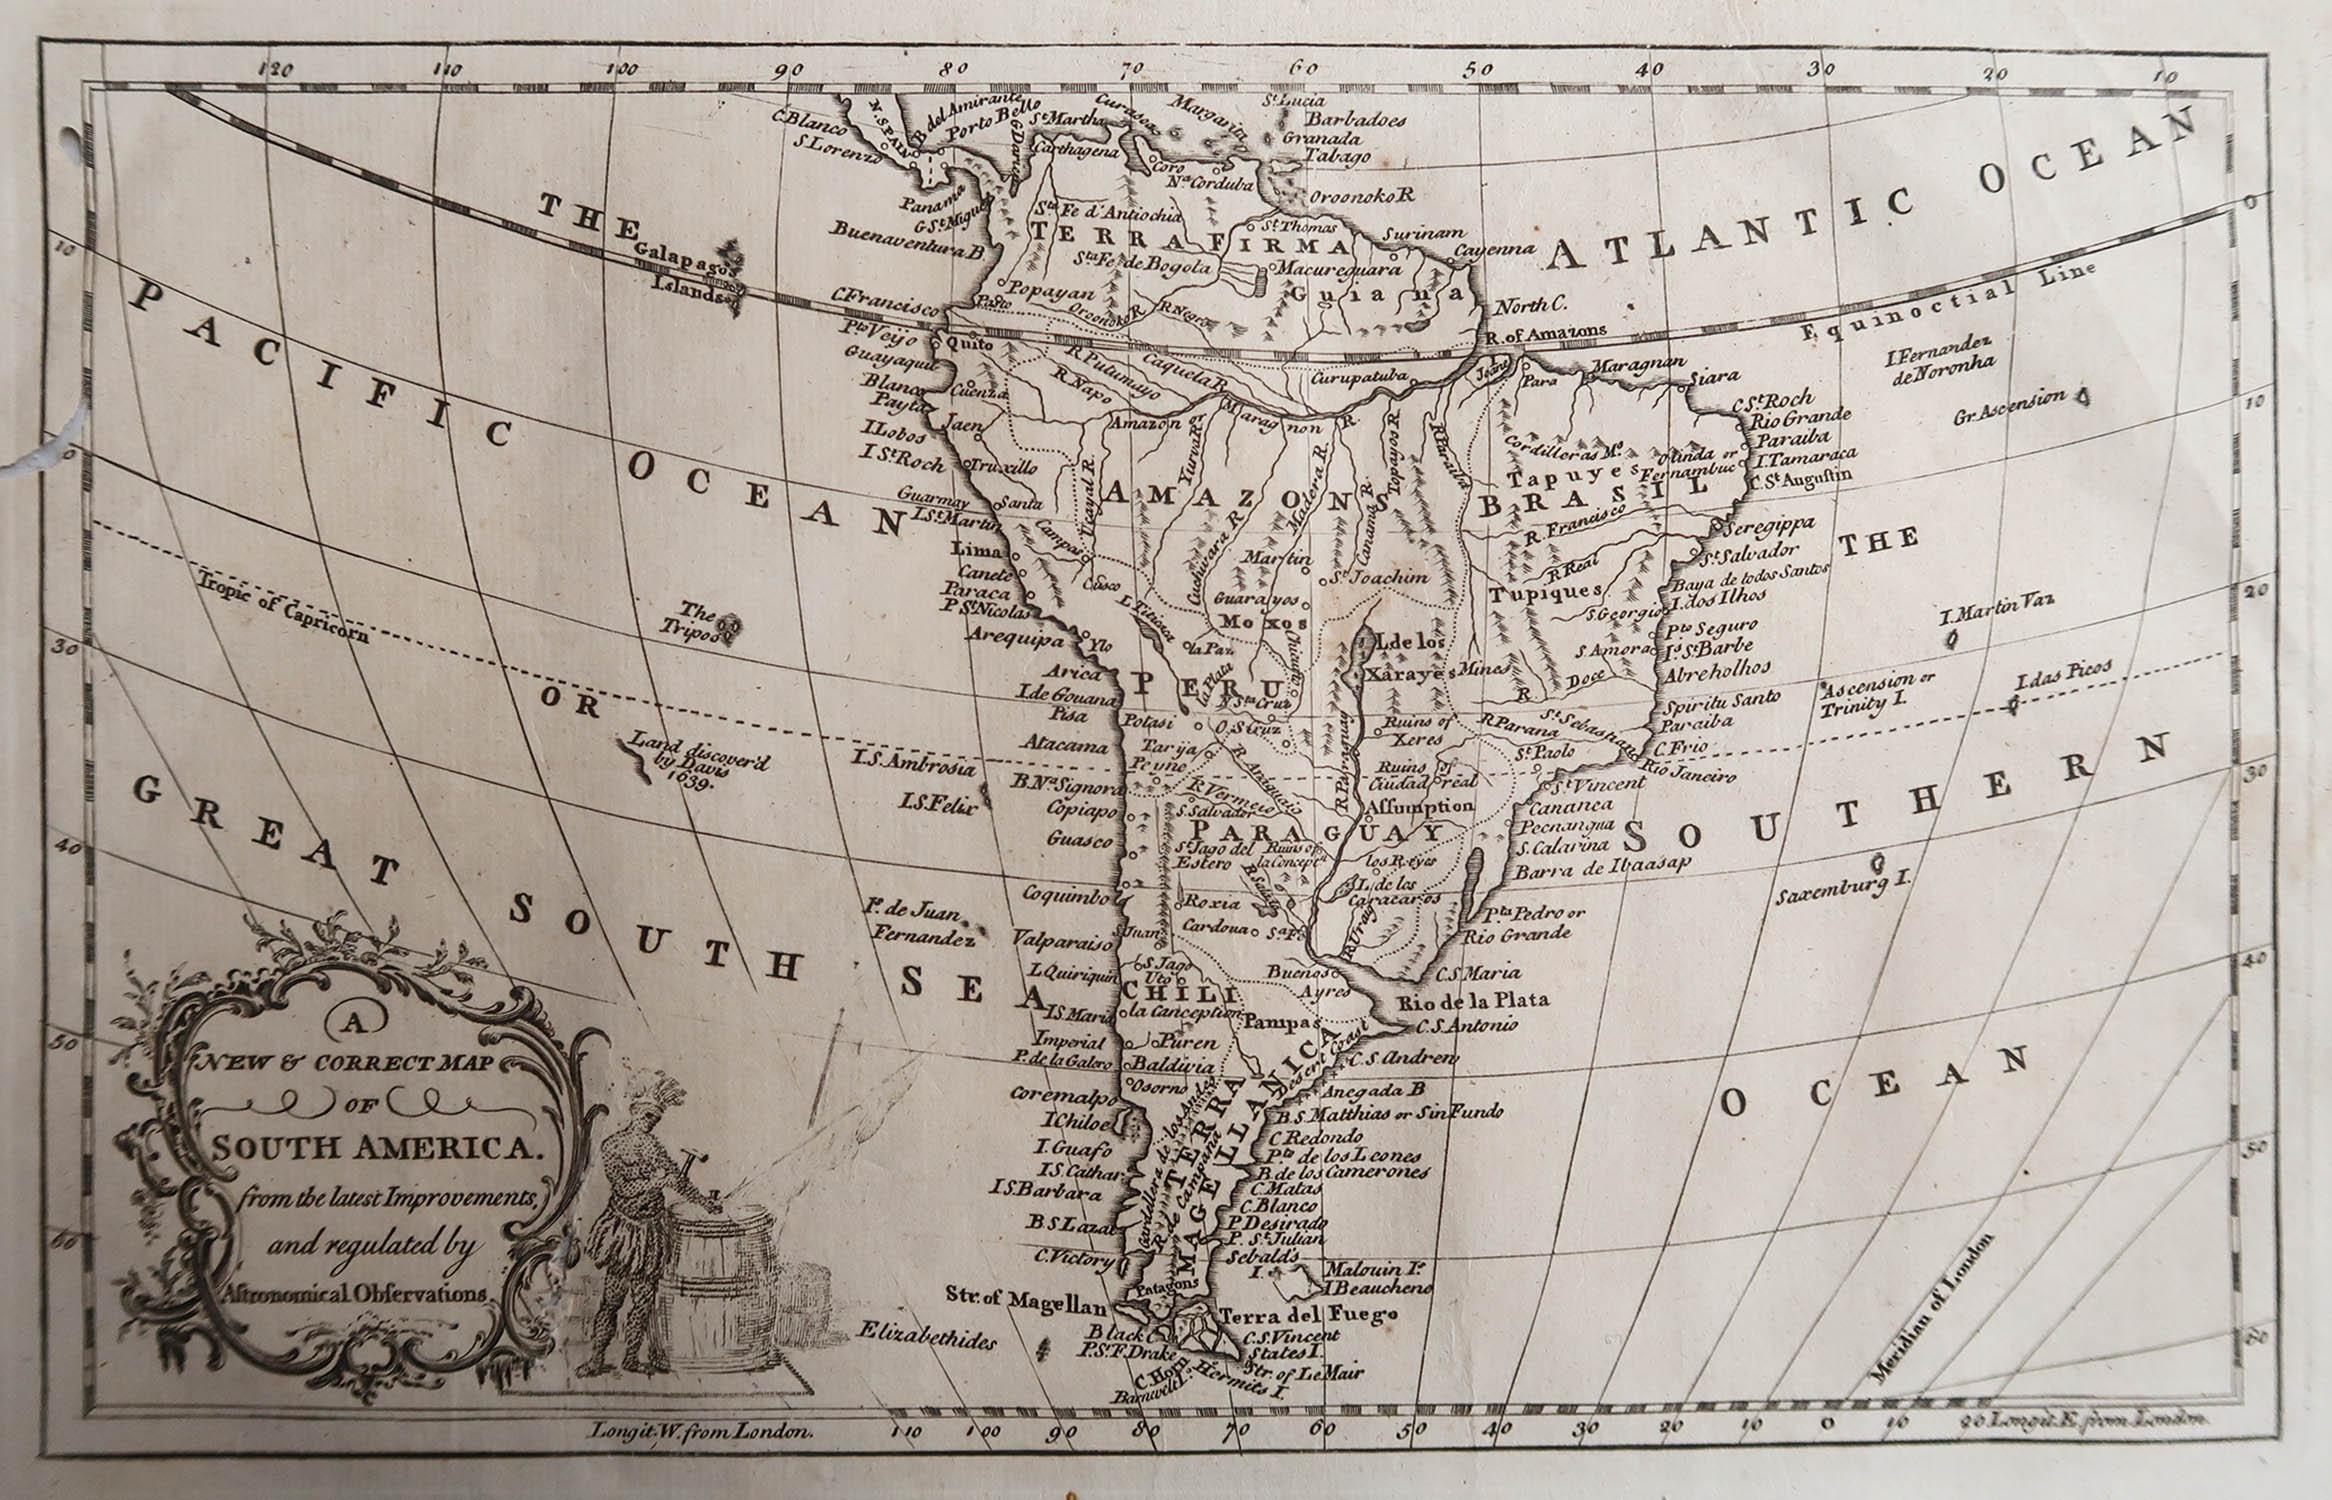 Großartige Karte von Südamerika

Kupferstich 

Veröffentlicht C.1780

Zwei kleine Wurmlöcher auf der linken Seite der Karte

Ungerahmt.